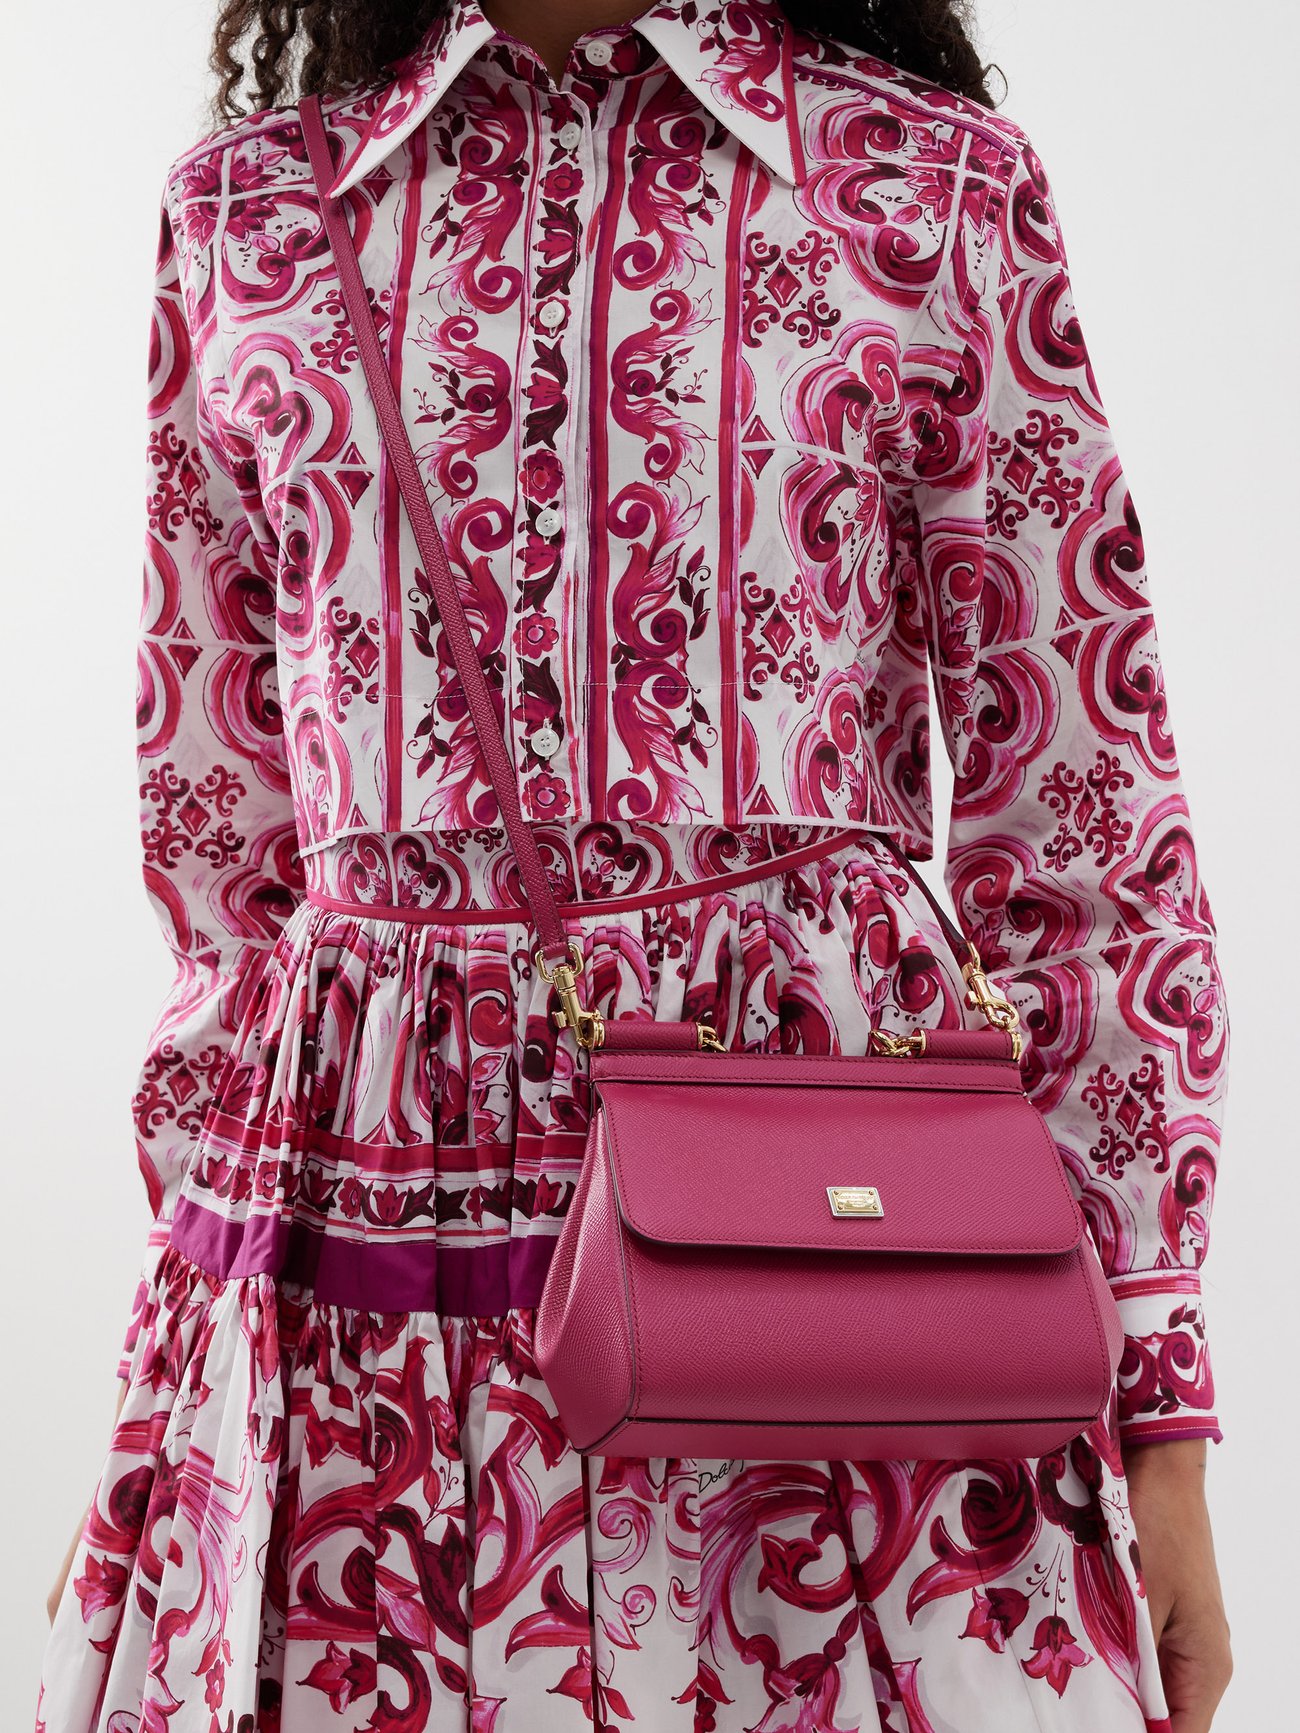 Dolce & Gabbana Small Sicily Polished Shoulder Bag - Red